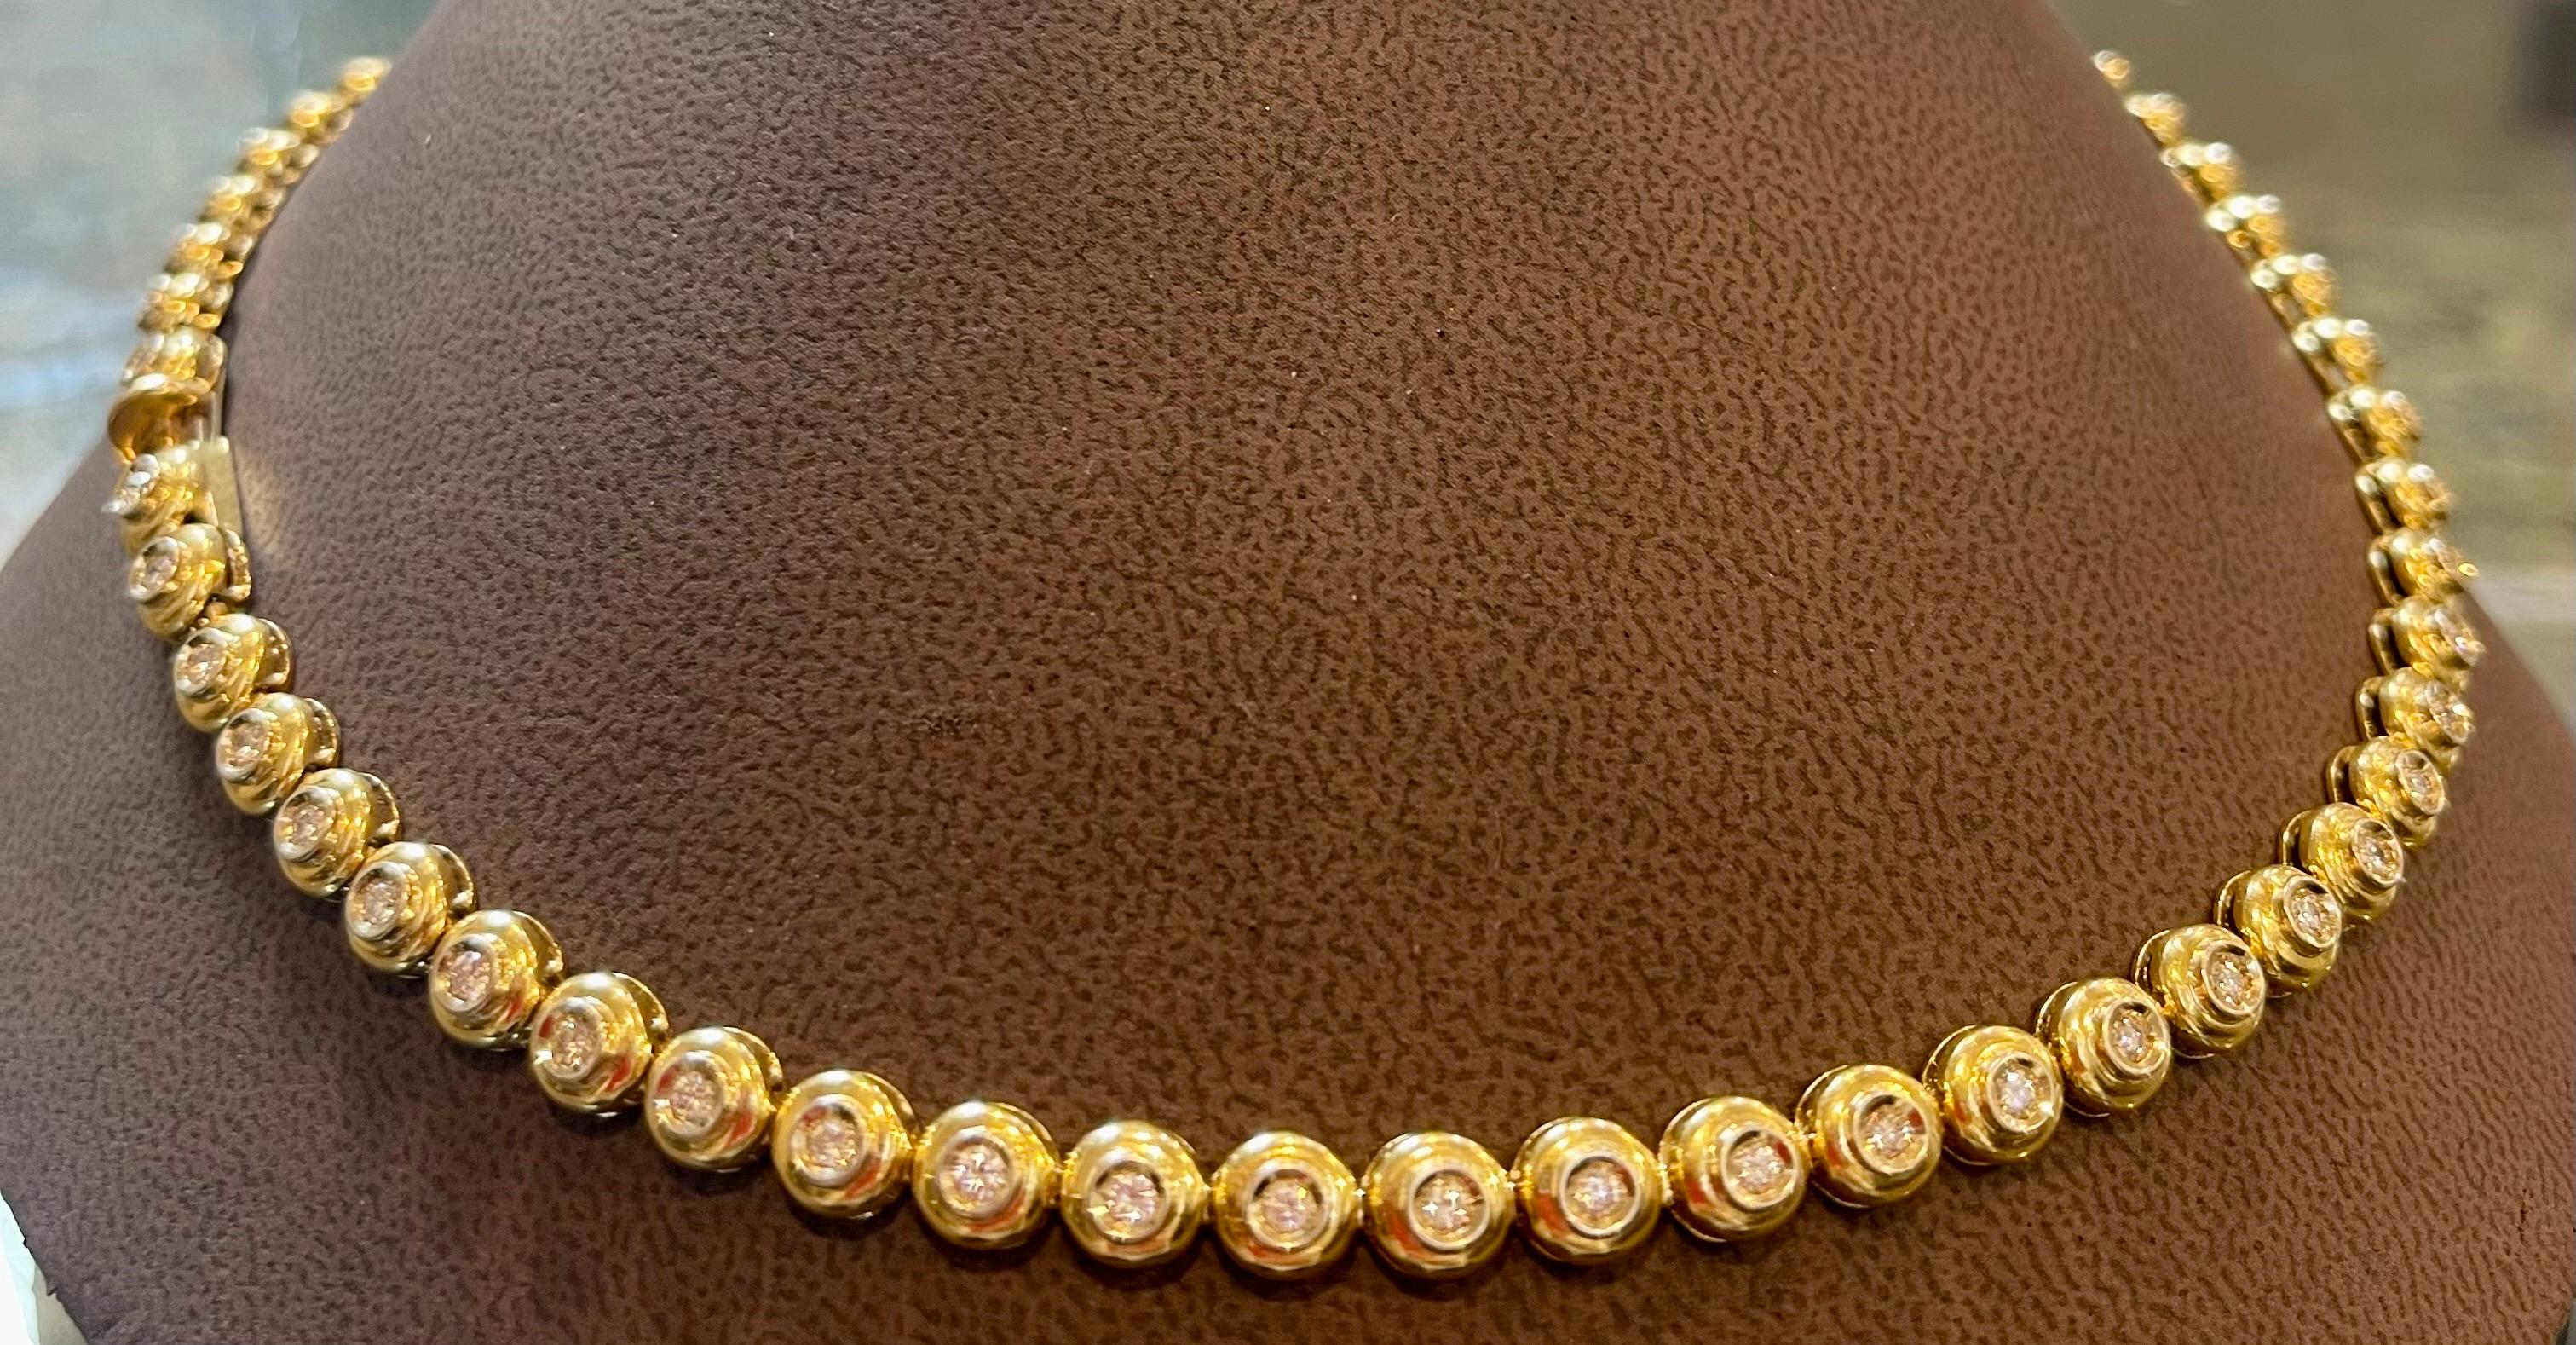 Round 6 Pointer, 4.5Ct Diamond Tennis Necklace 18Karat Yellow Gold 52 Gm, Unisex 8